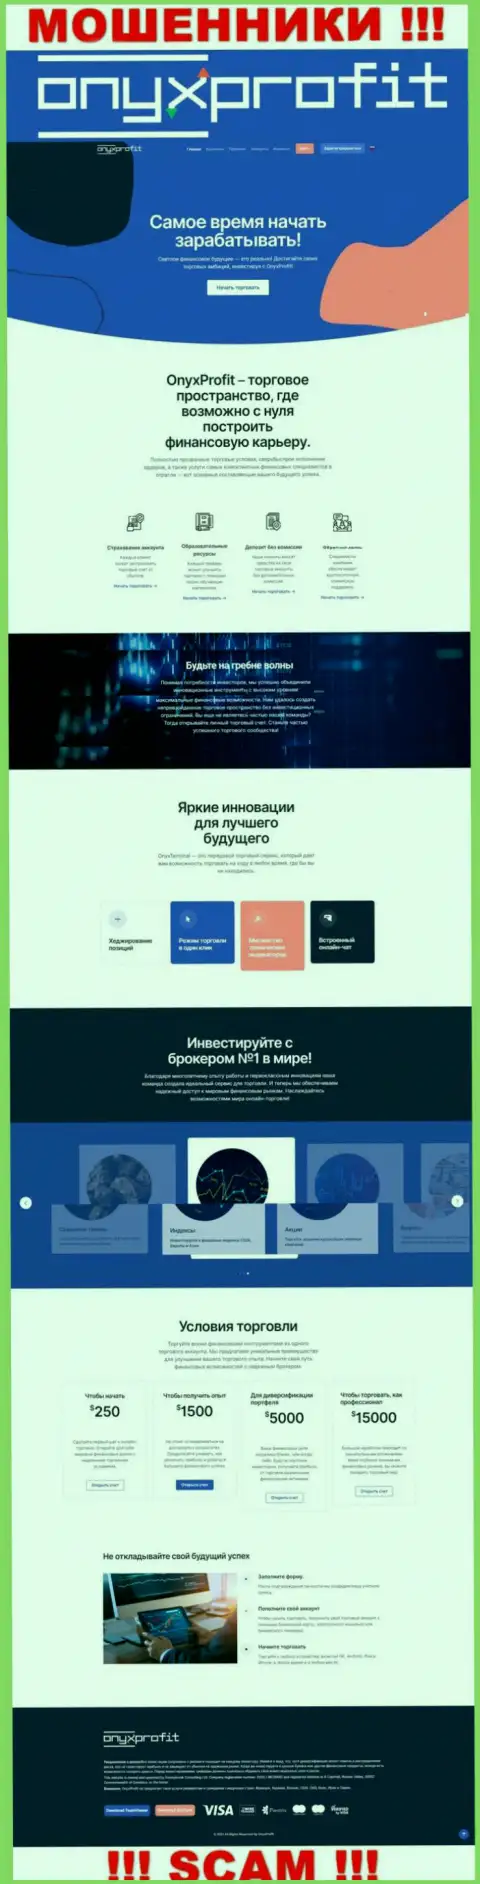 Основная страница официального web-сайта мошенников ОниксПрофит